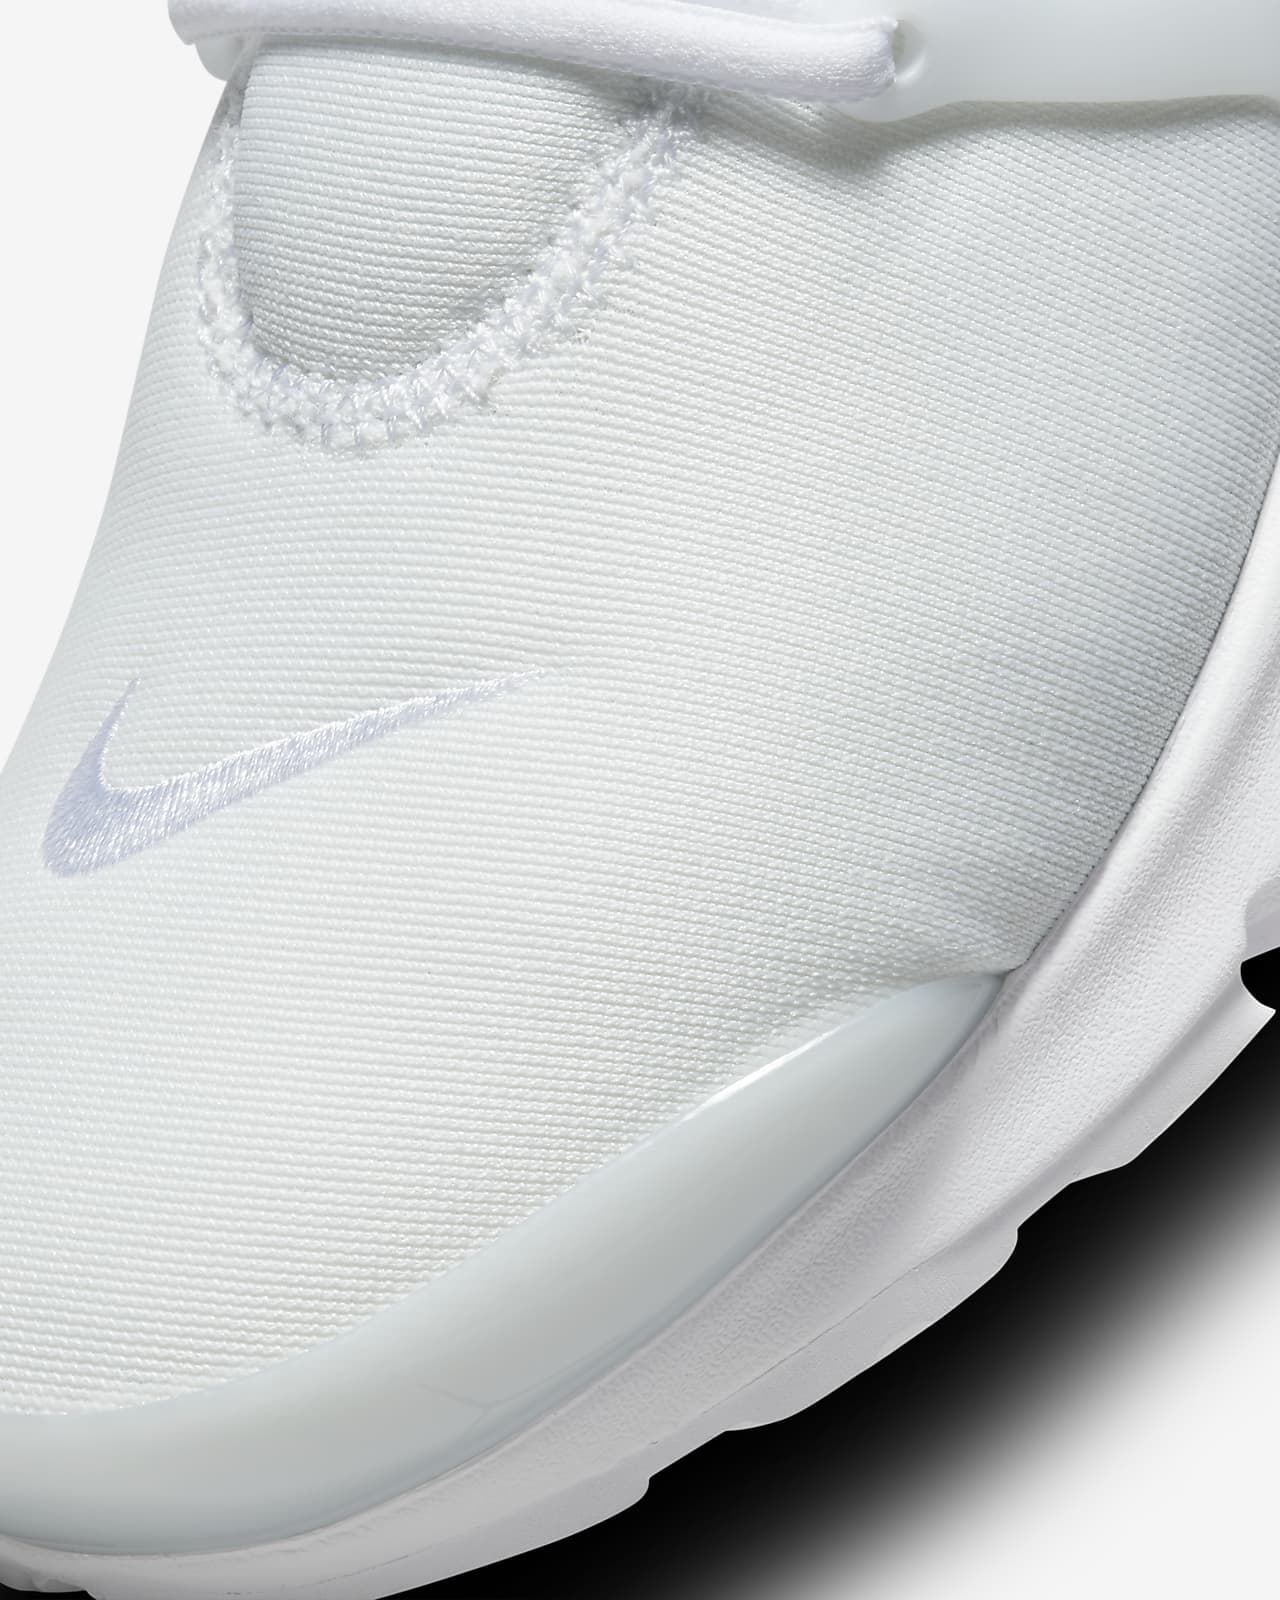 Nike Air Presto iD - Le Site de la Sneaker